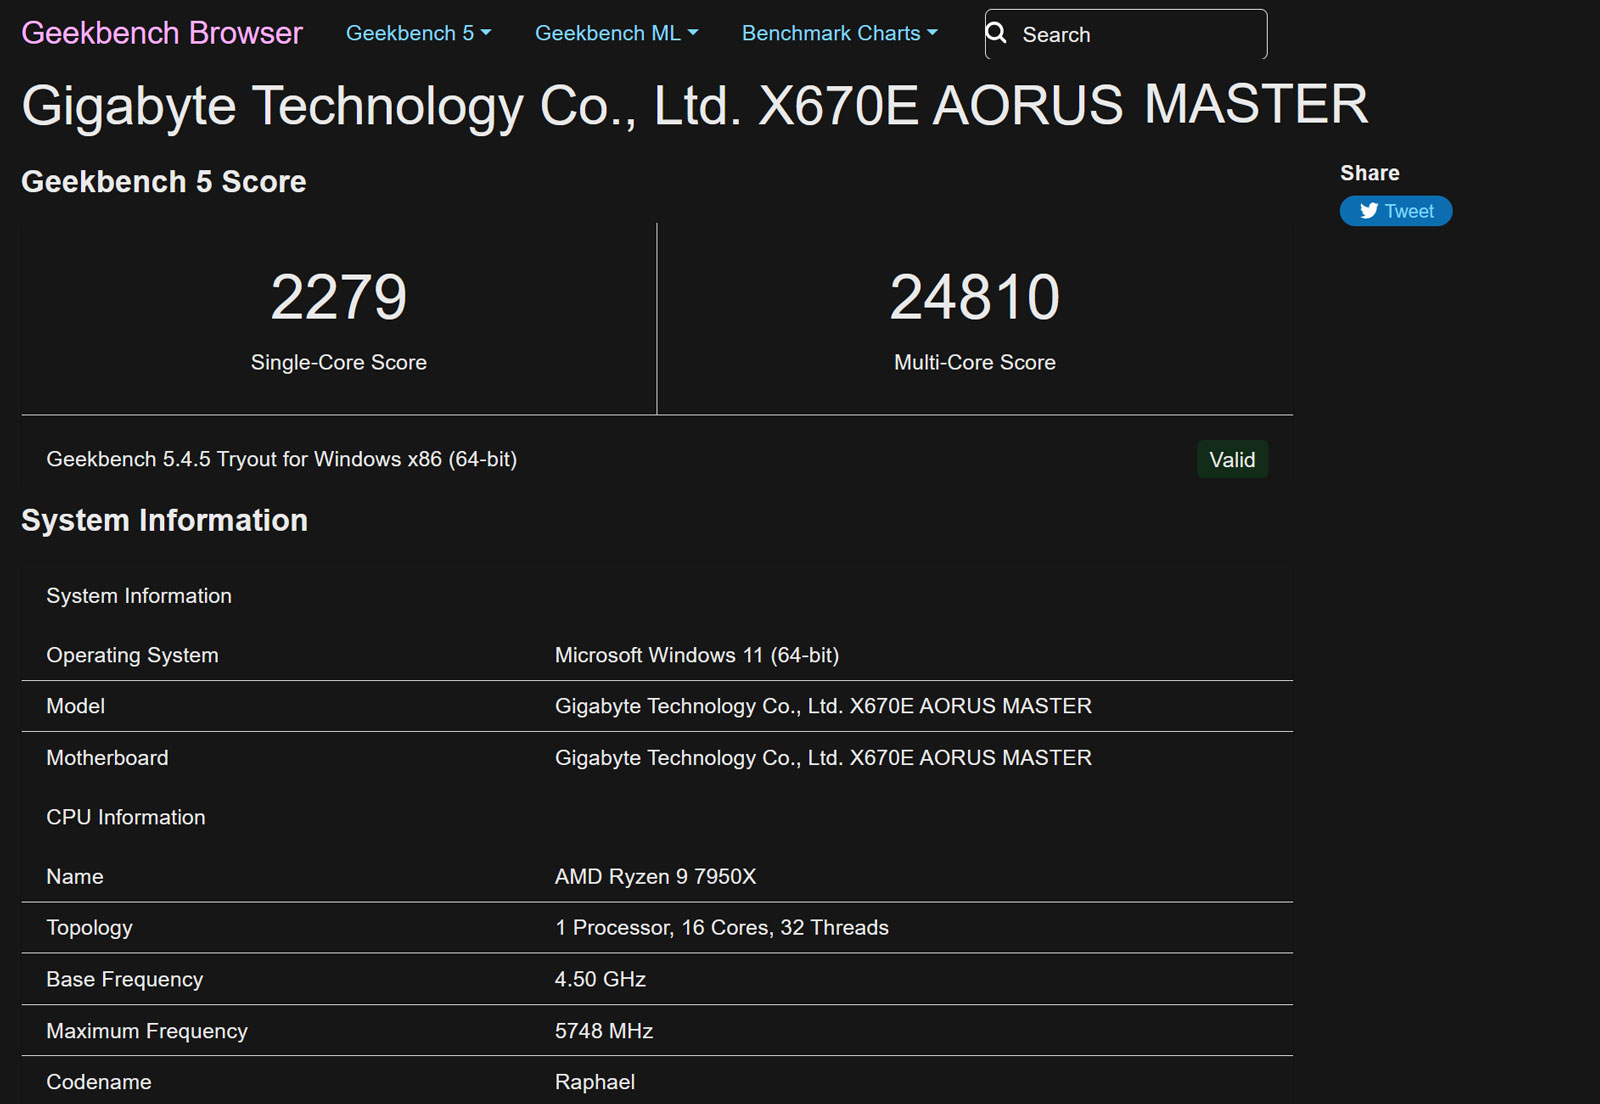 AMD Ryzen 9 7950X Progress Touted With Newest BIOS